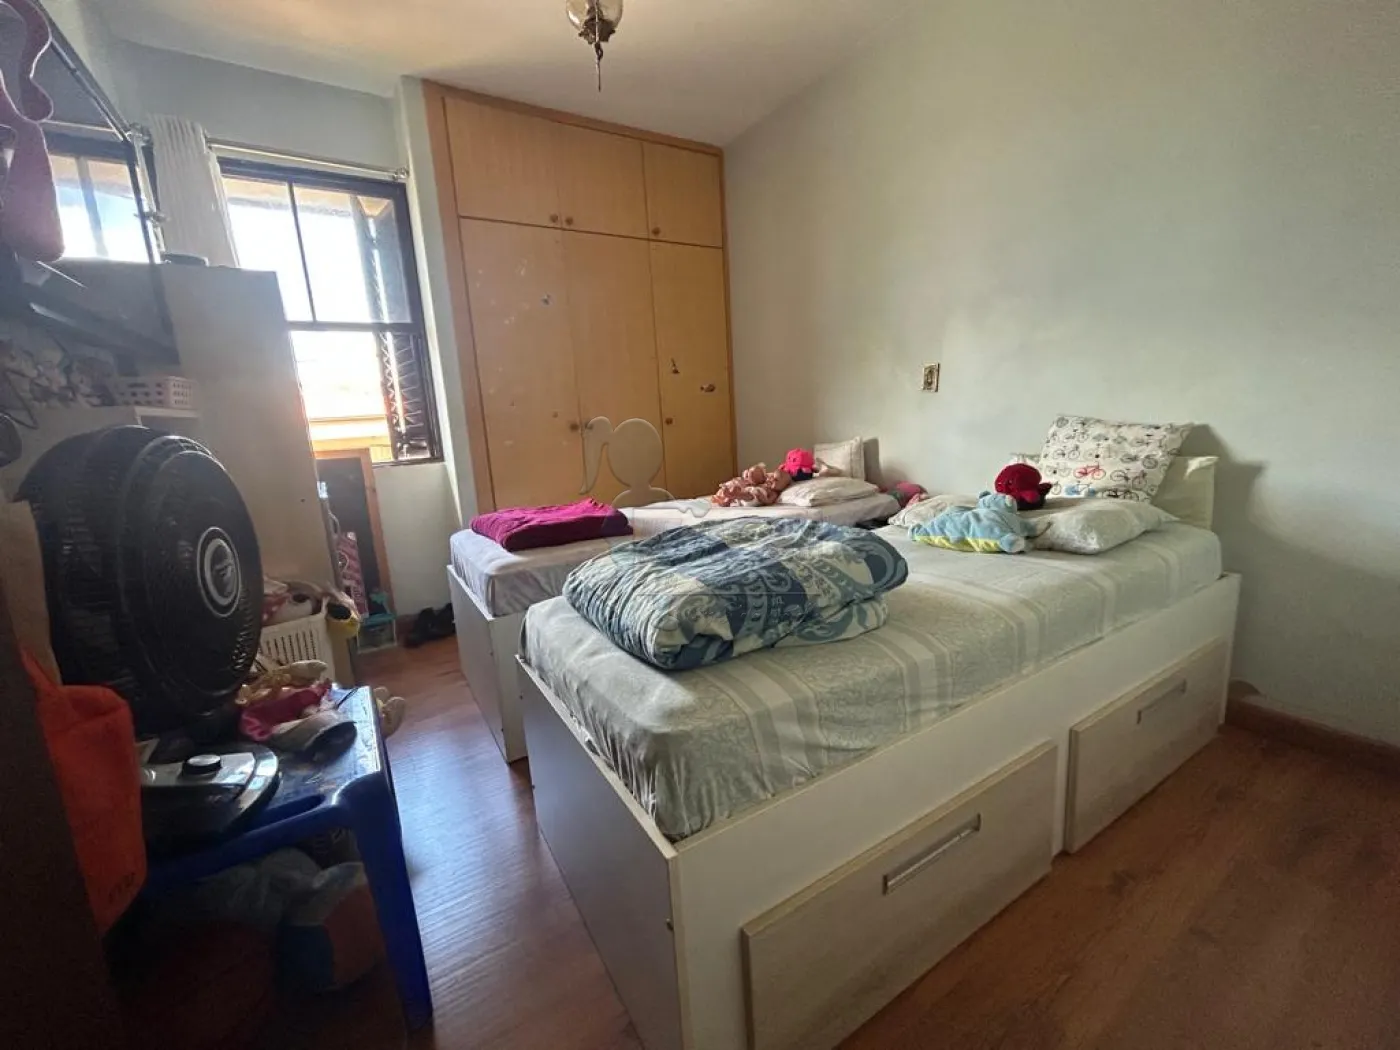 Comprar Apartamentos / Padrão em Ribeirão Preto R$ 375.000,00 - Foto 10